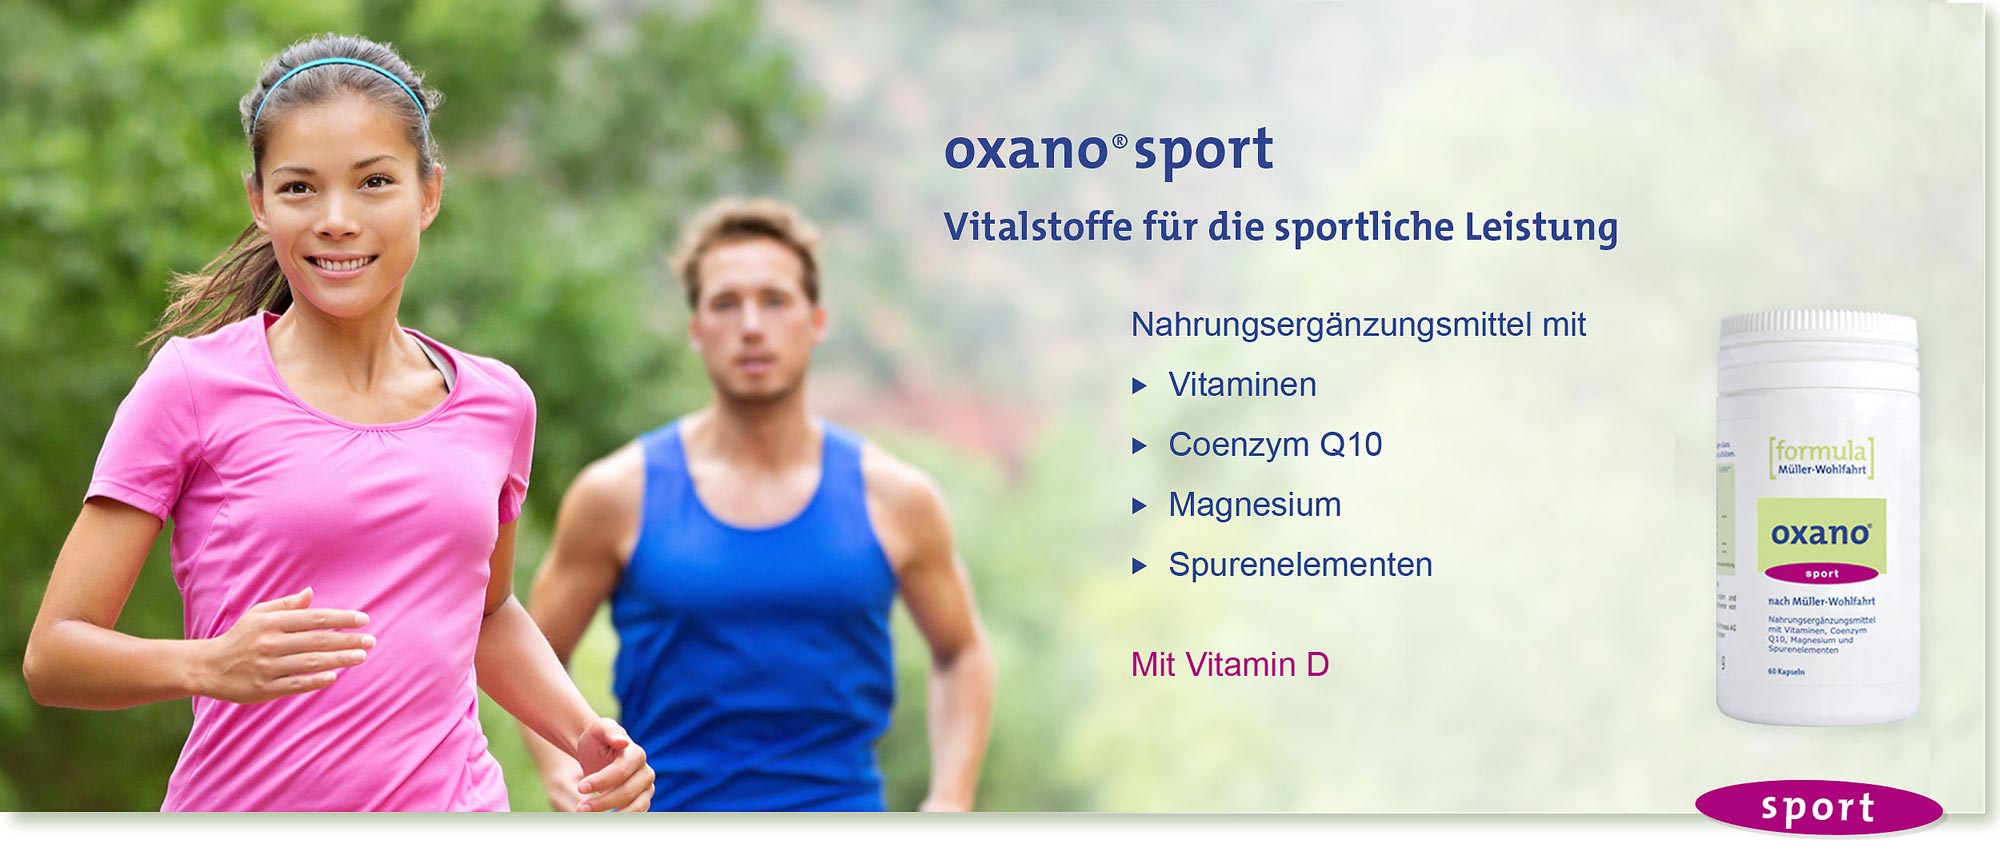 HeadImage | OXANO-Sport Vitalstoff-Kapseln nach Müller-Wohlfahrt mit Vitaminen und Mineralien für Sportler